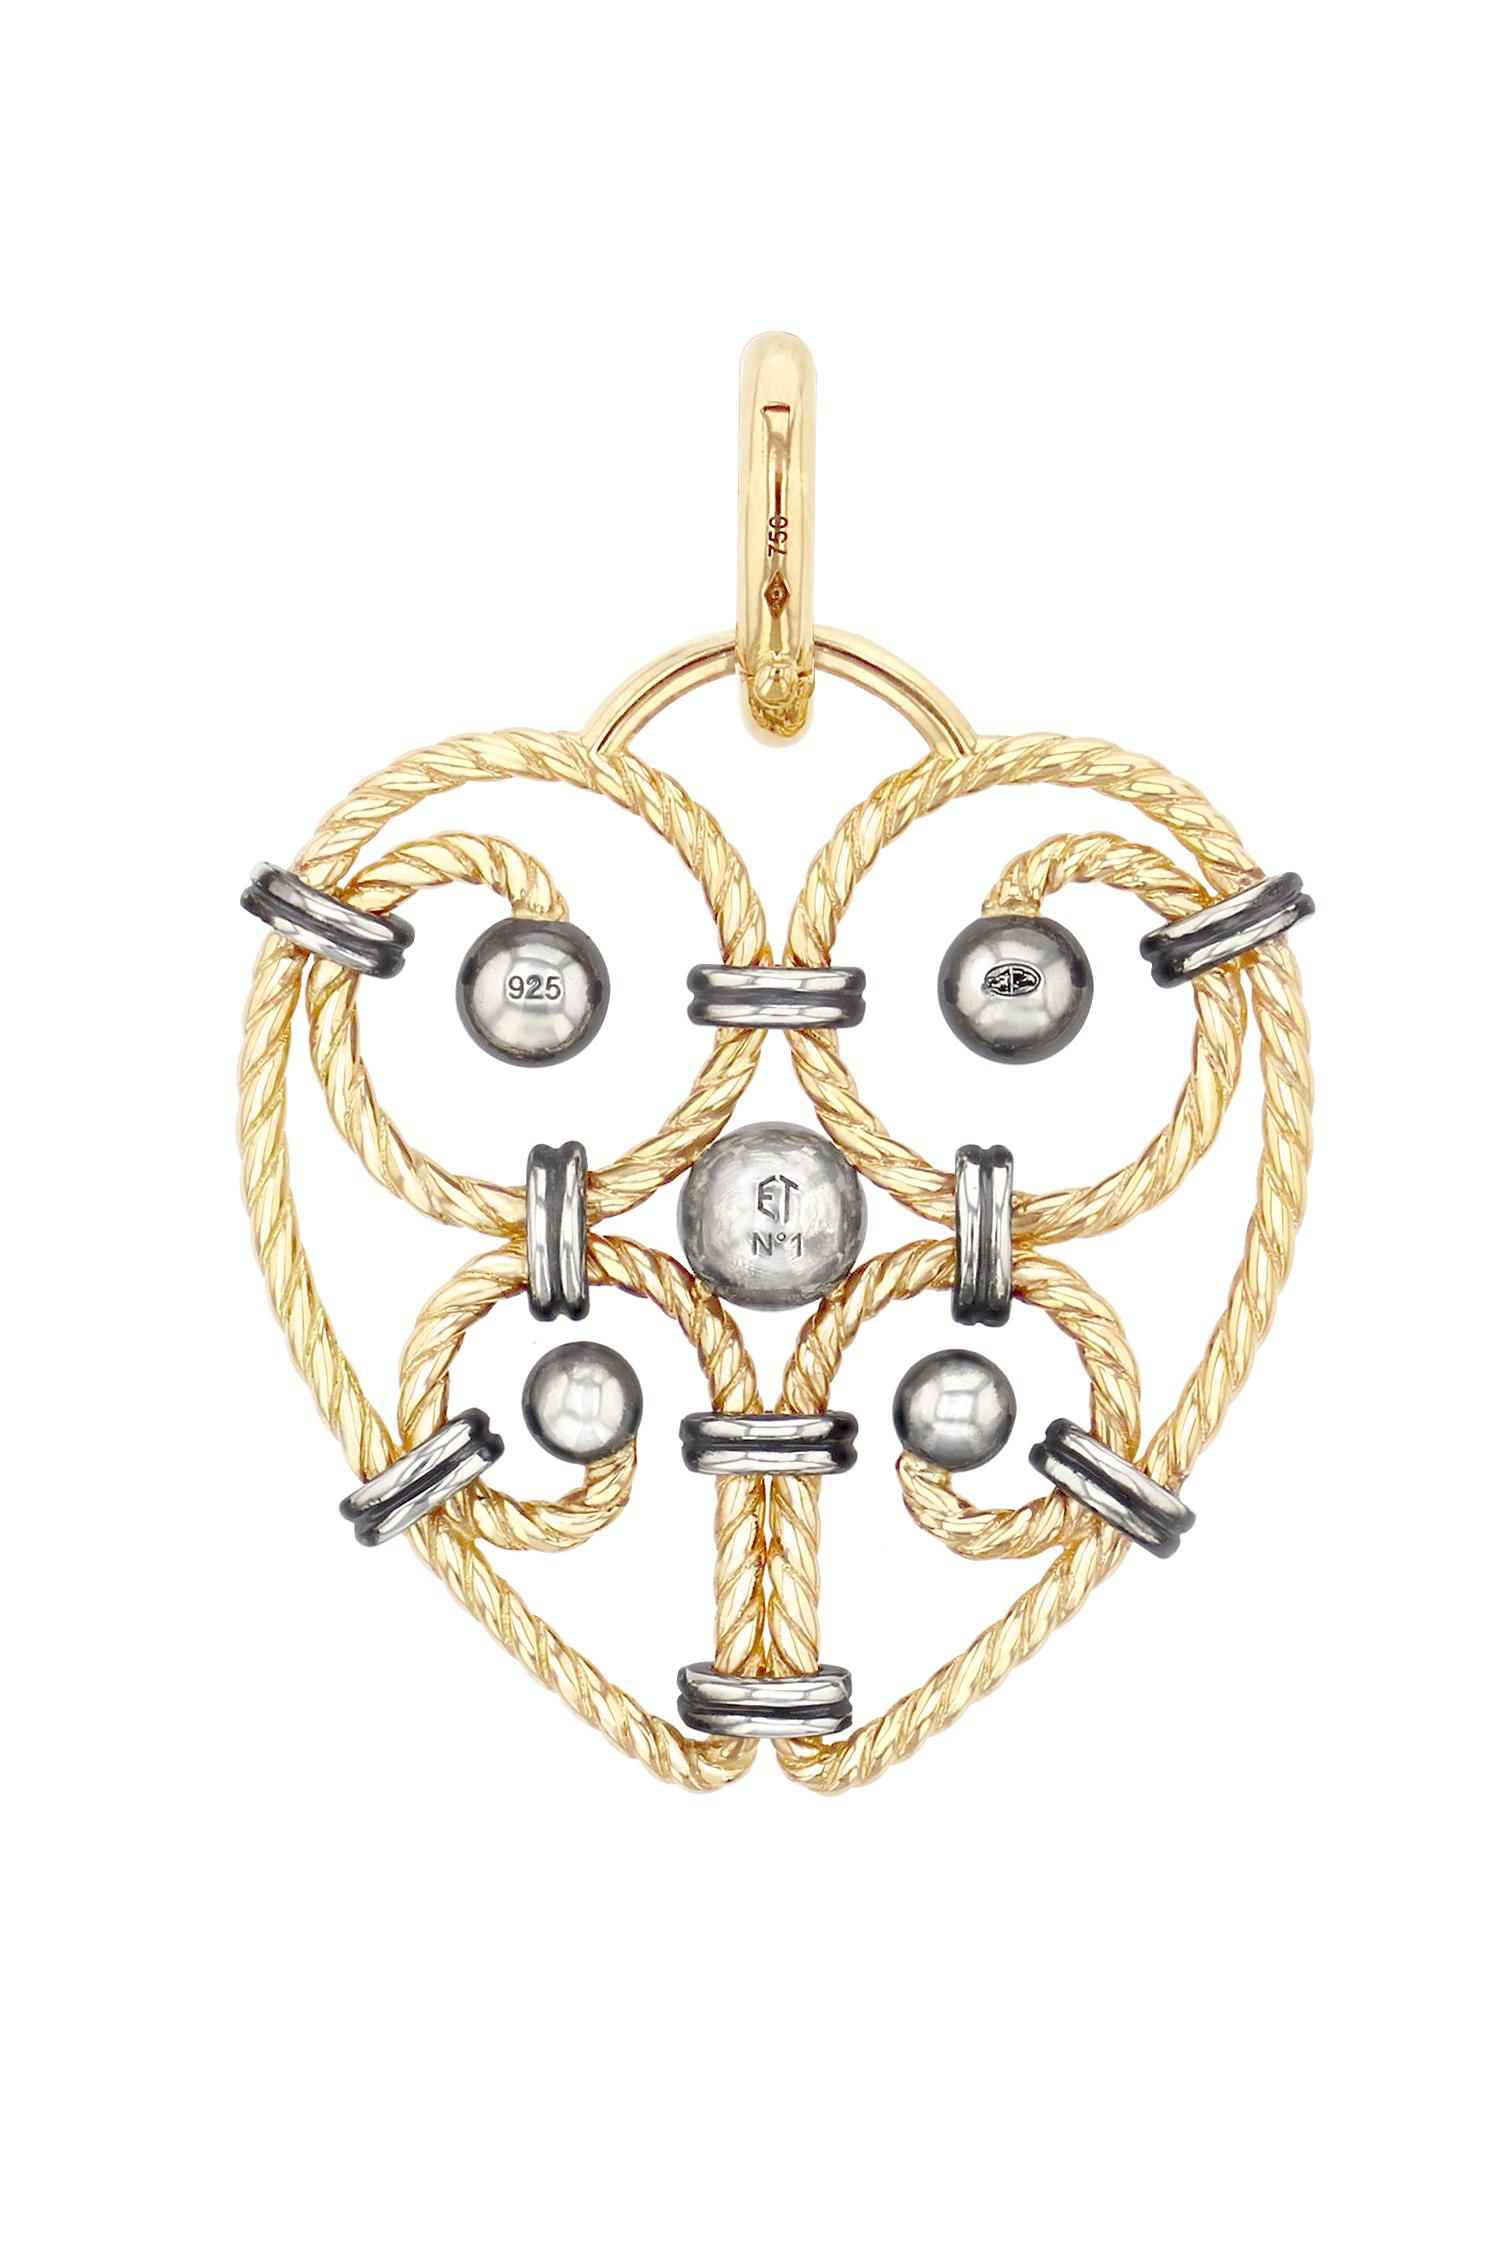 Cœur-Charme, goldene Serpentine mit Kugeln aus Silber, die mit einem Diamanten besetzt sind und von einer Reihe von Ringen aus Silber gehalten werden. Goldbügel zum Öffnen. 

Verkauft ohne Kette.

Auf Anfrage auch mit Kette erhältlich.